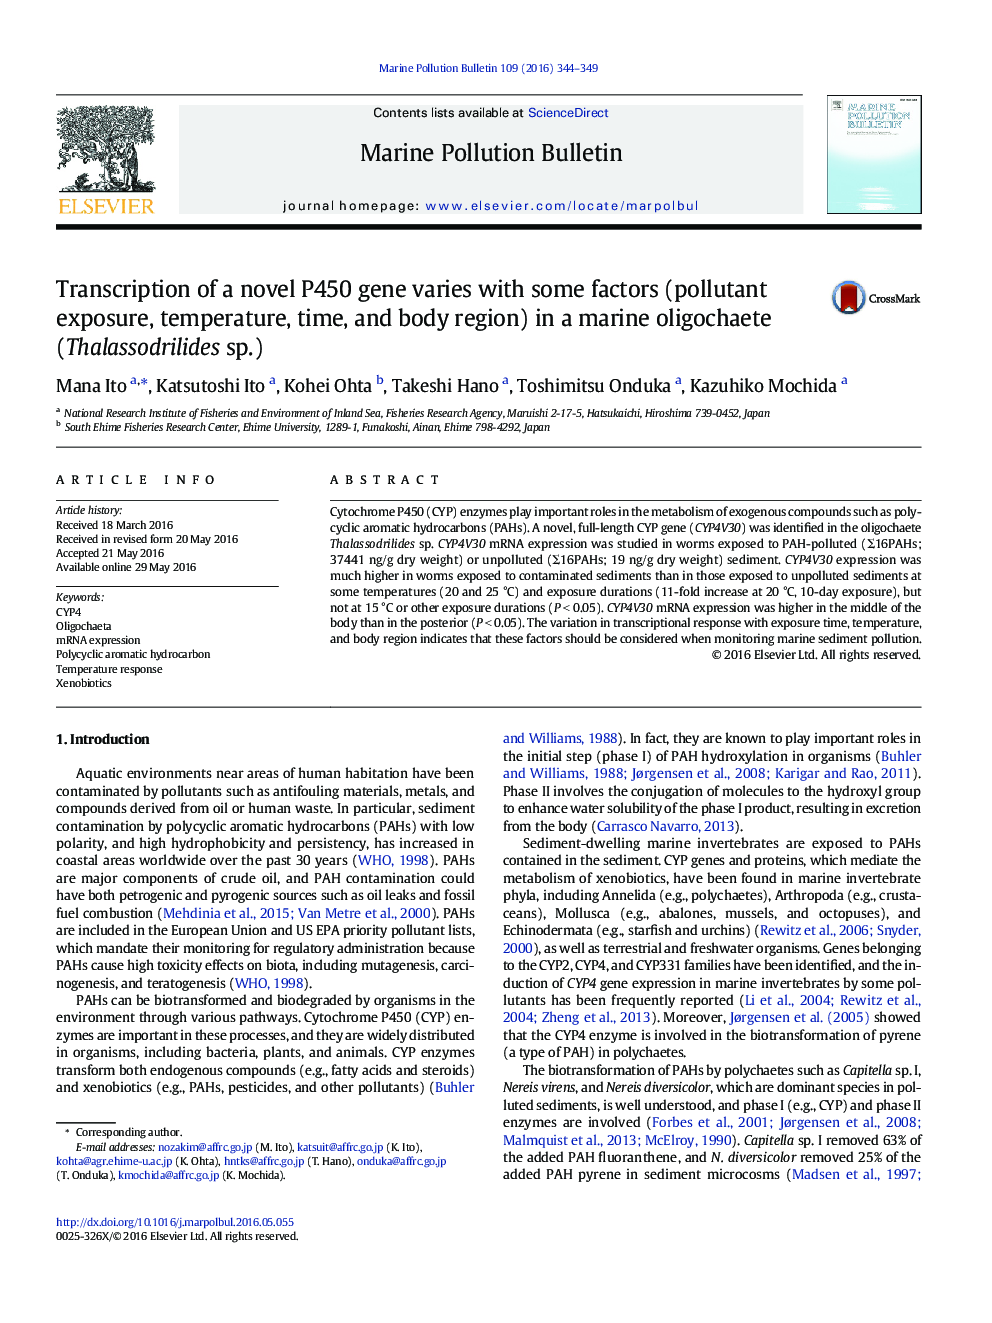 رونویسی یک ژن P450 جدید با برخی از عوامل (آلودگی، دما، زمان و منطقه بدن) در یک oligochaete دریایی (Thalassodrilides sp.) متفاوت است.